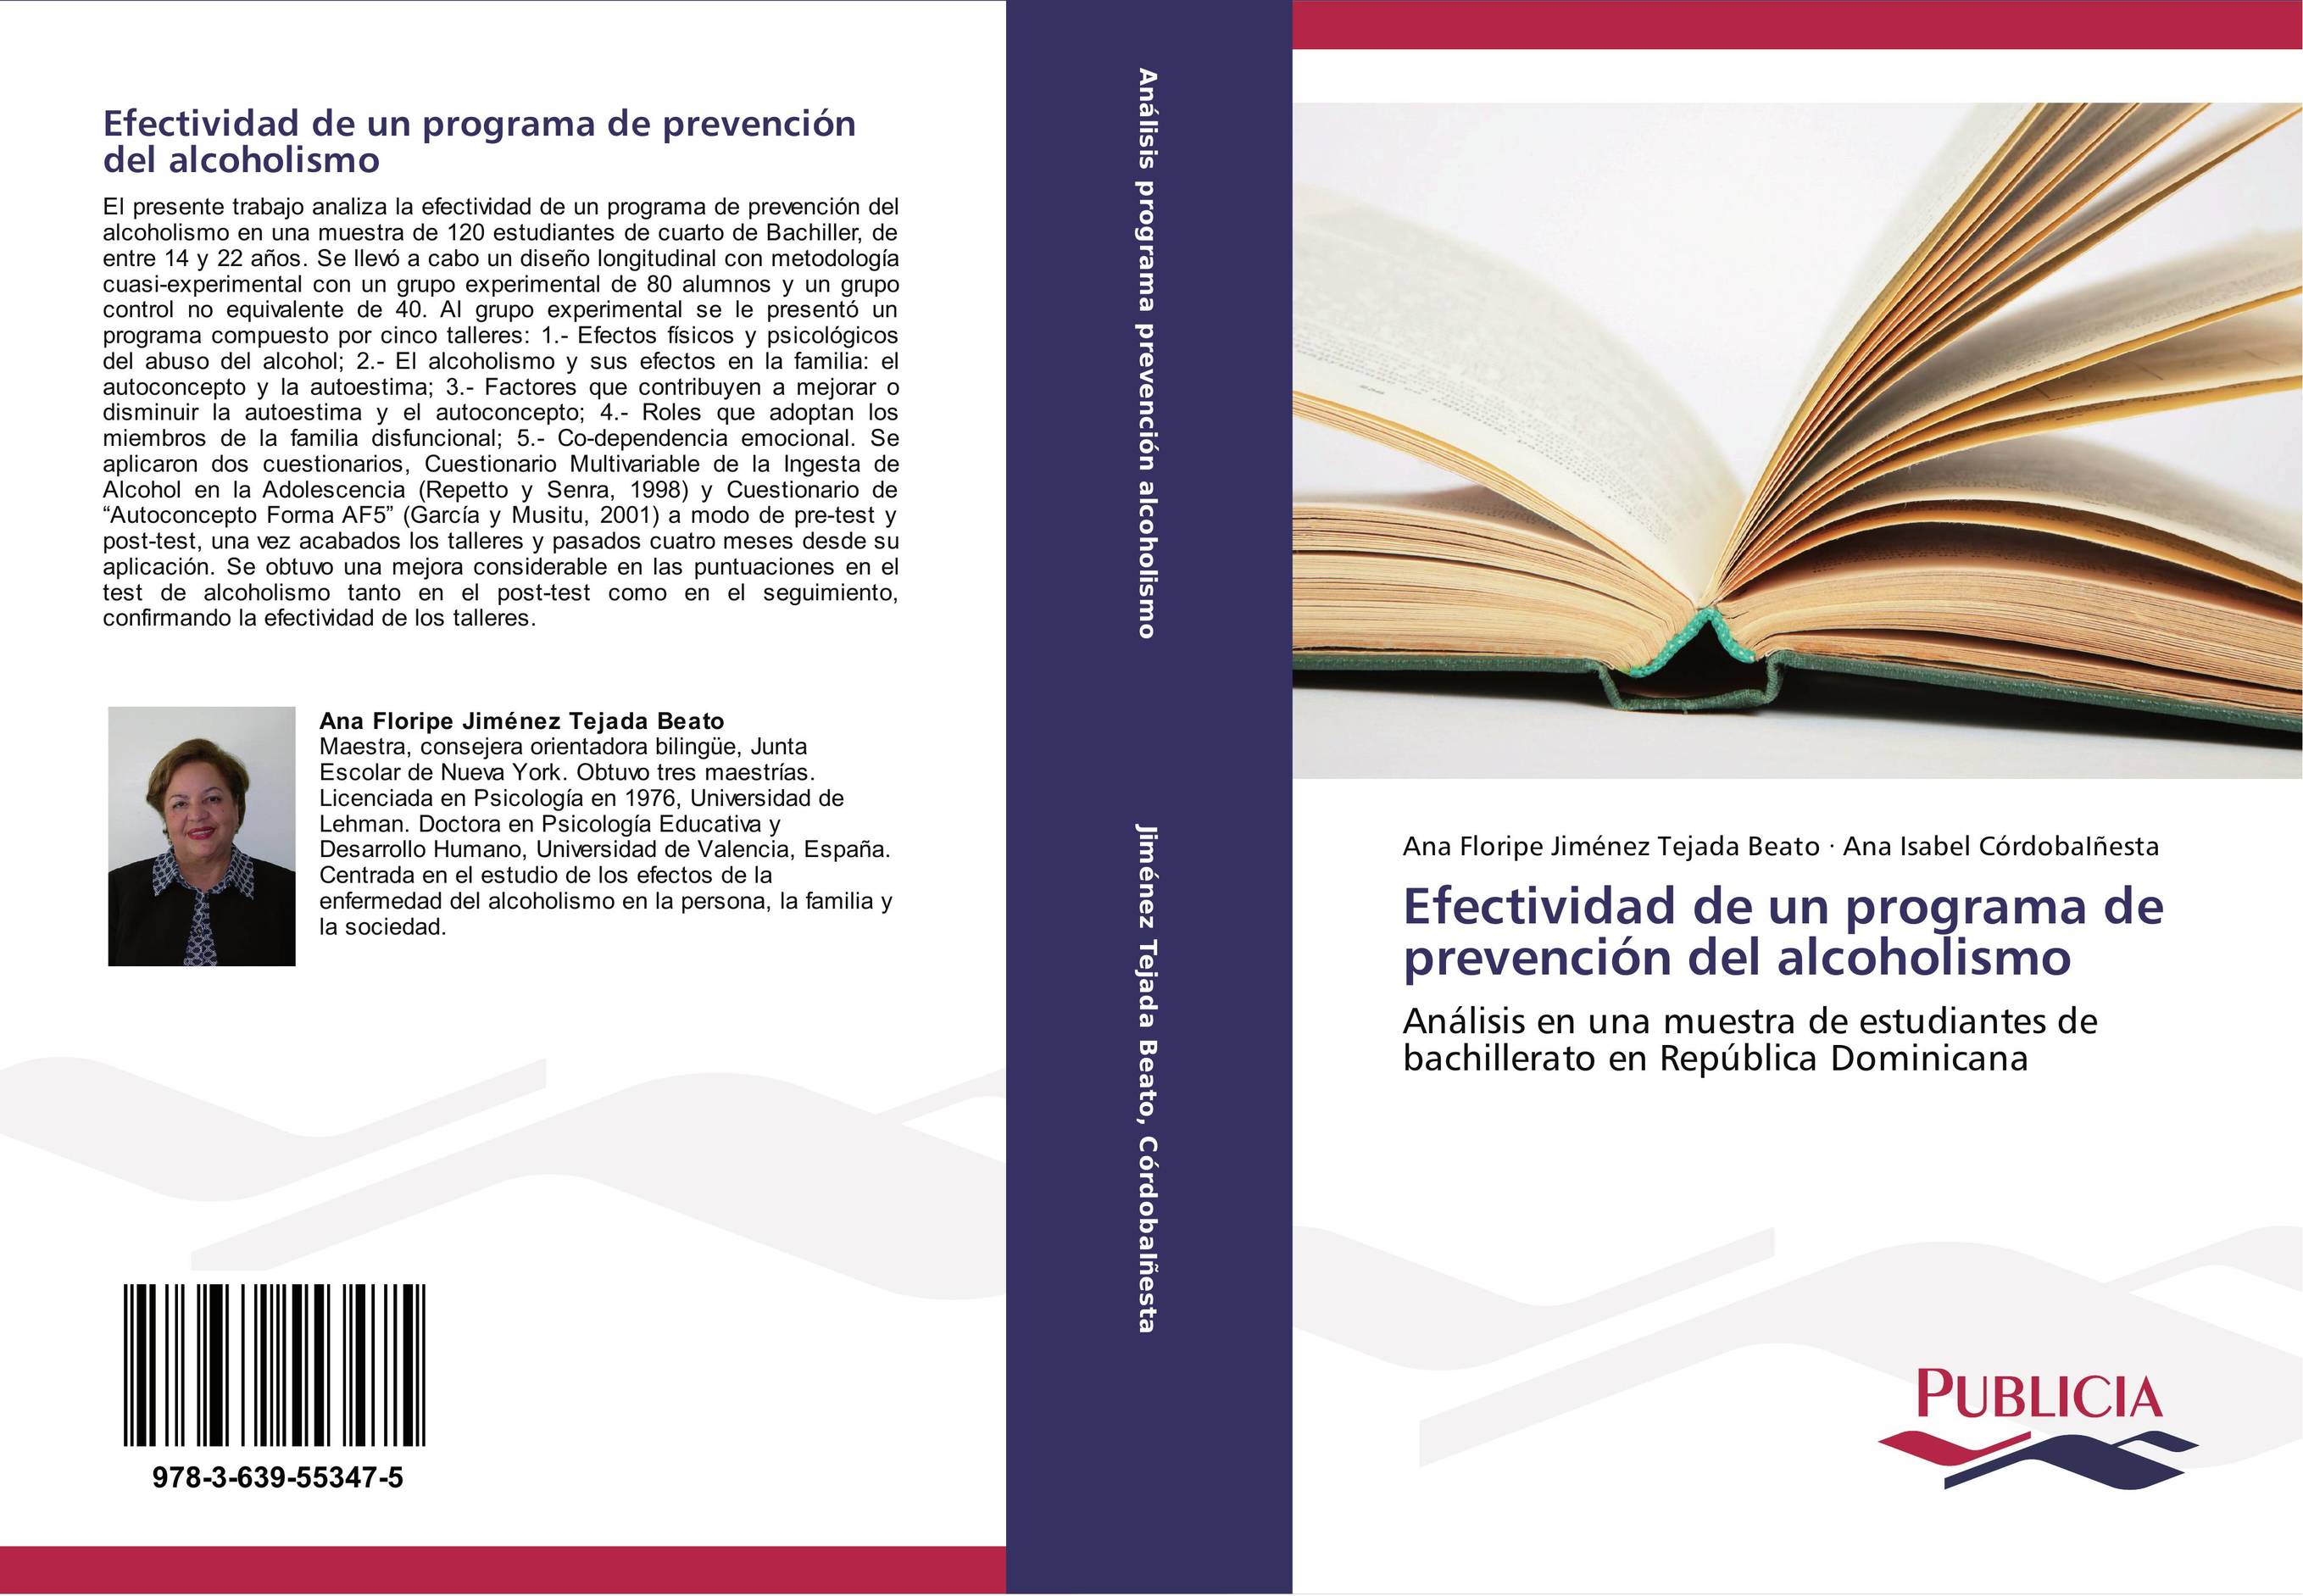 Efectividad de un programa de prevención del alcoholismo